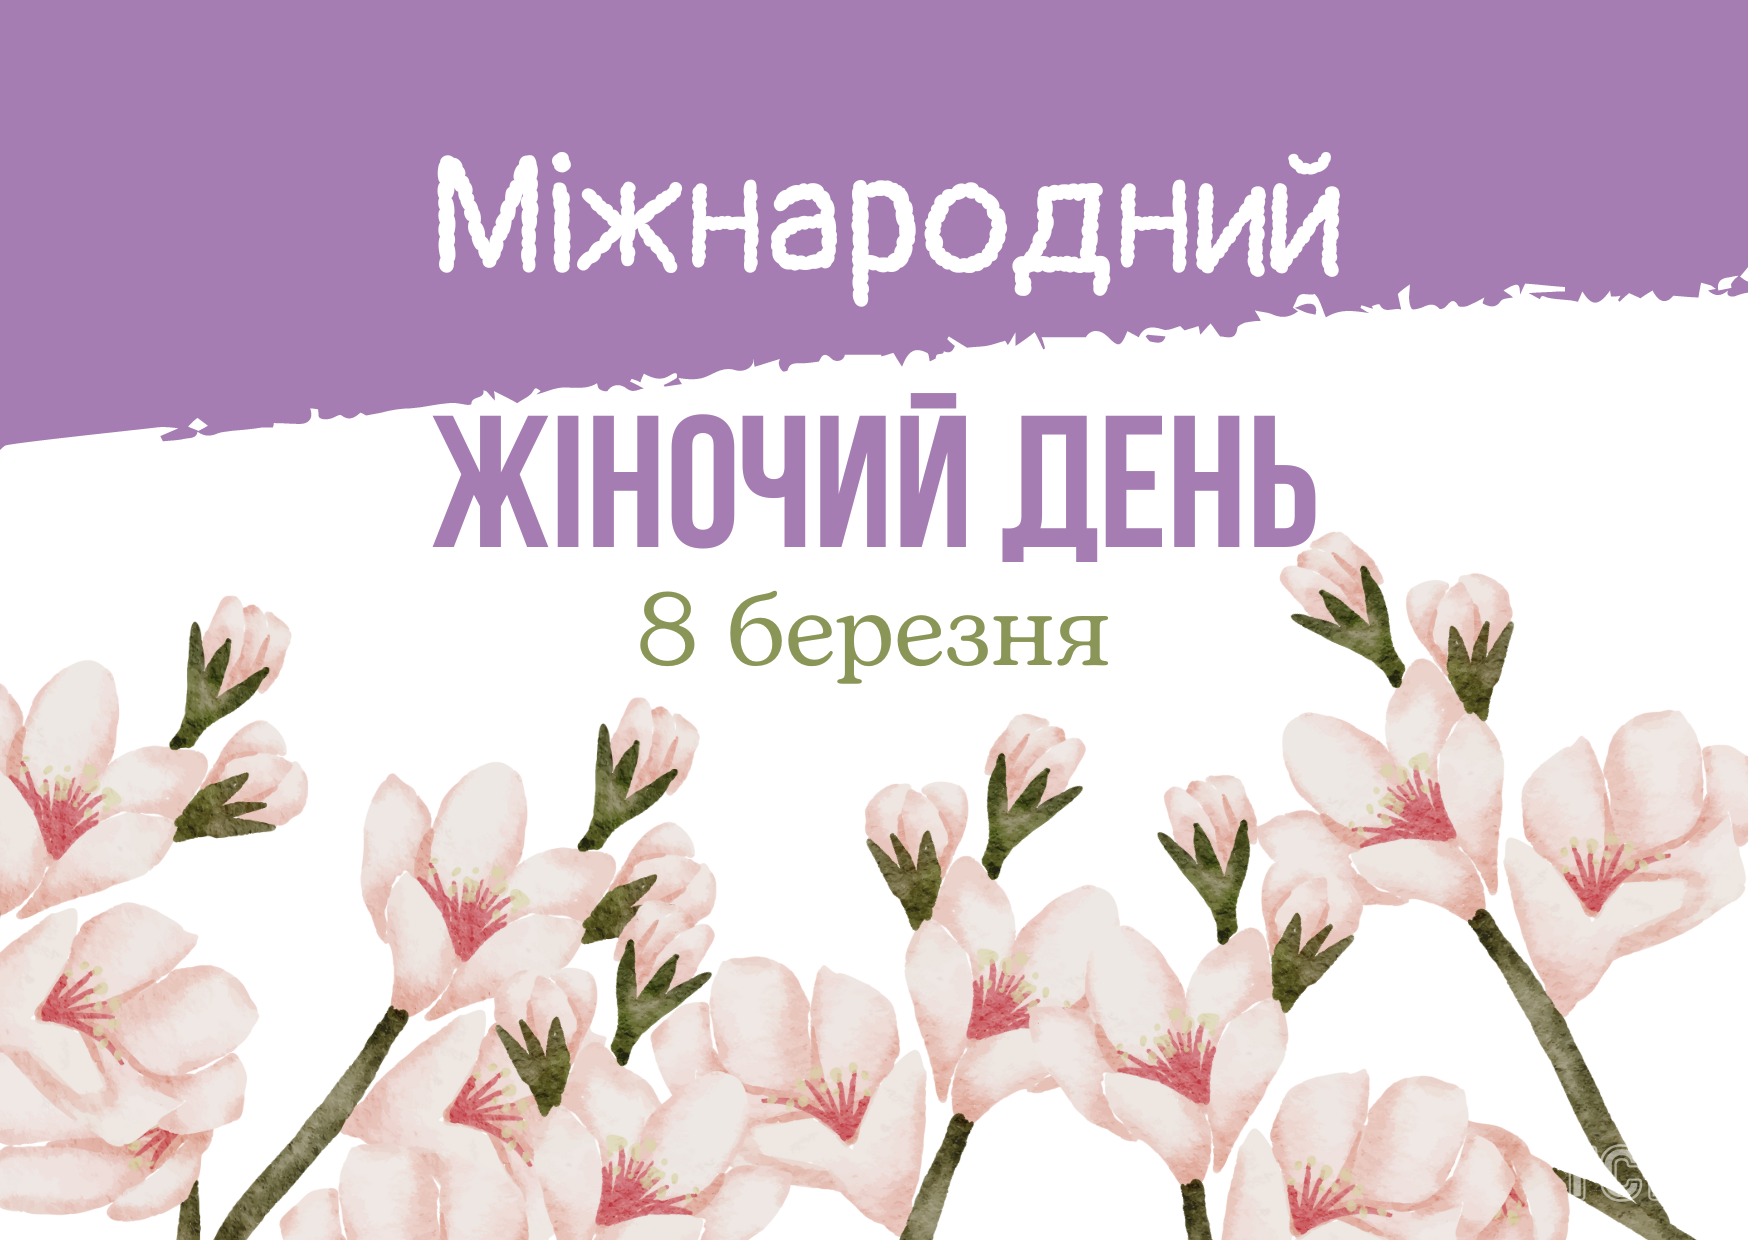 З 8 Березня 2023 року: картинки українською, привітання в прозі та віршах до Міжнародного жіночого дня 7